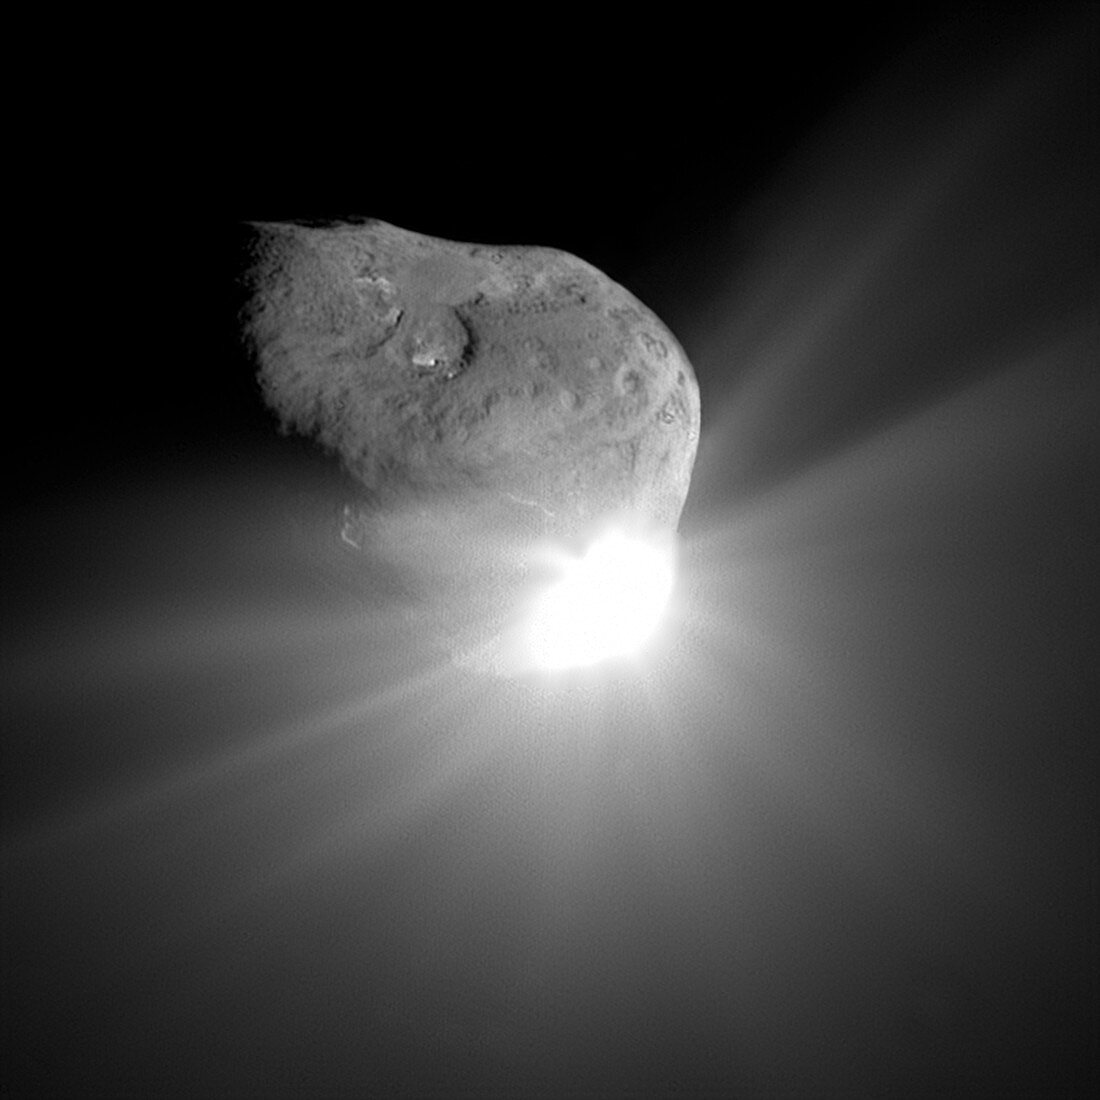 Deep Impact comet strike